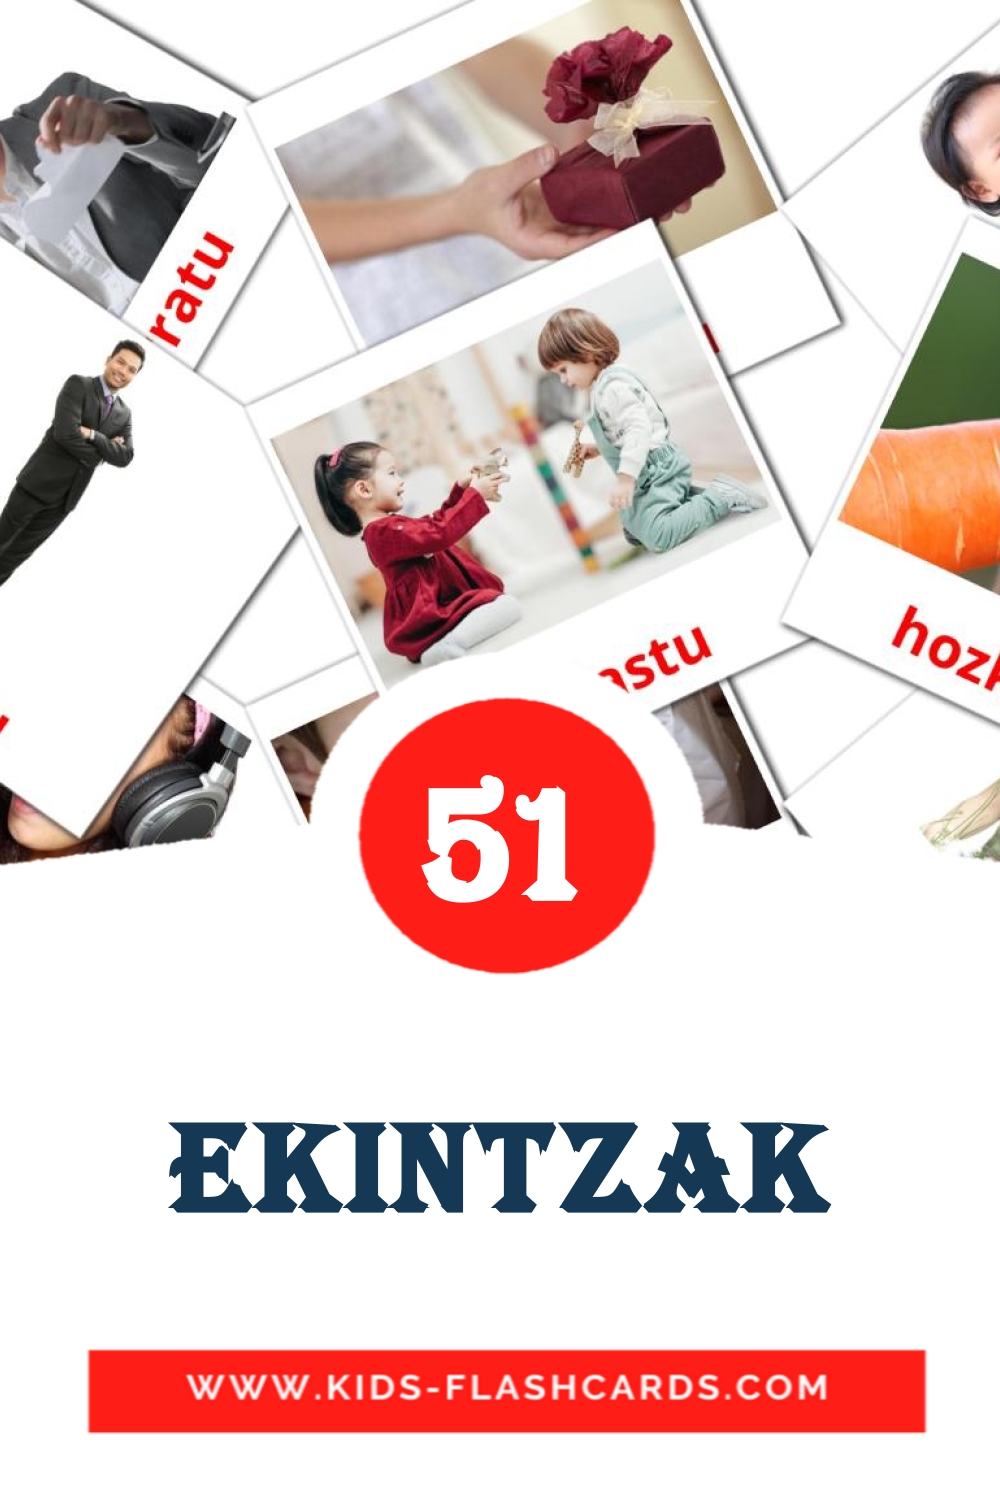 51 Cartões com Imagens de Ekintzak para Jardim de Infância em basco